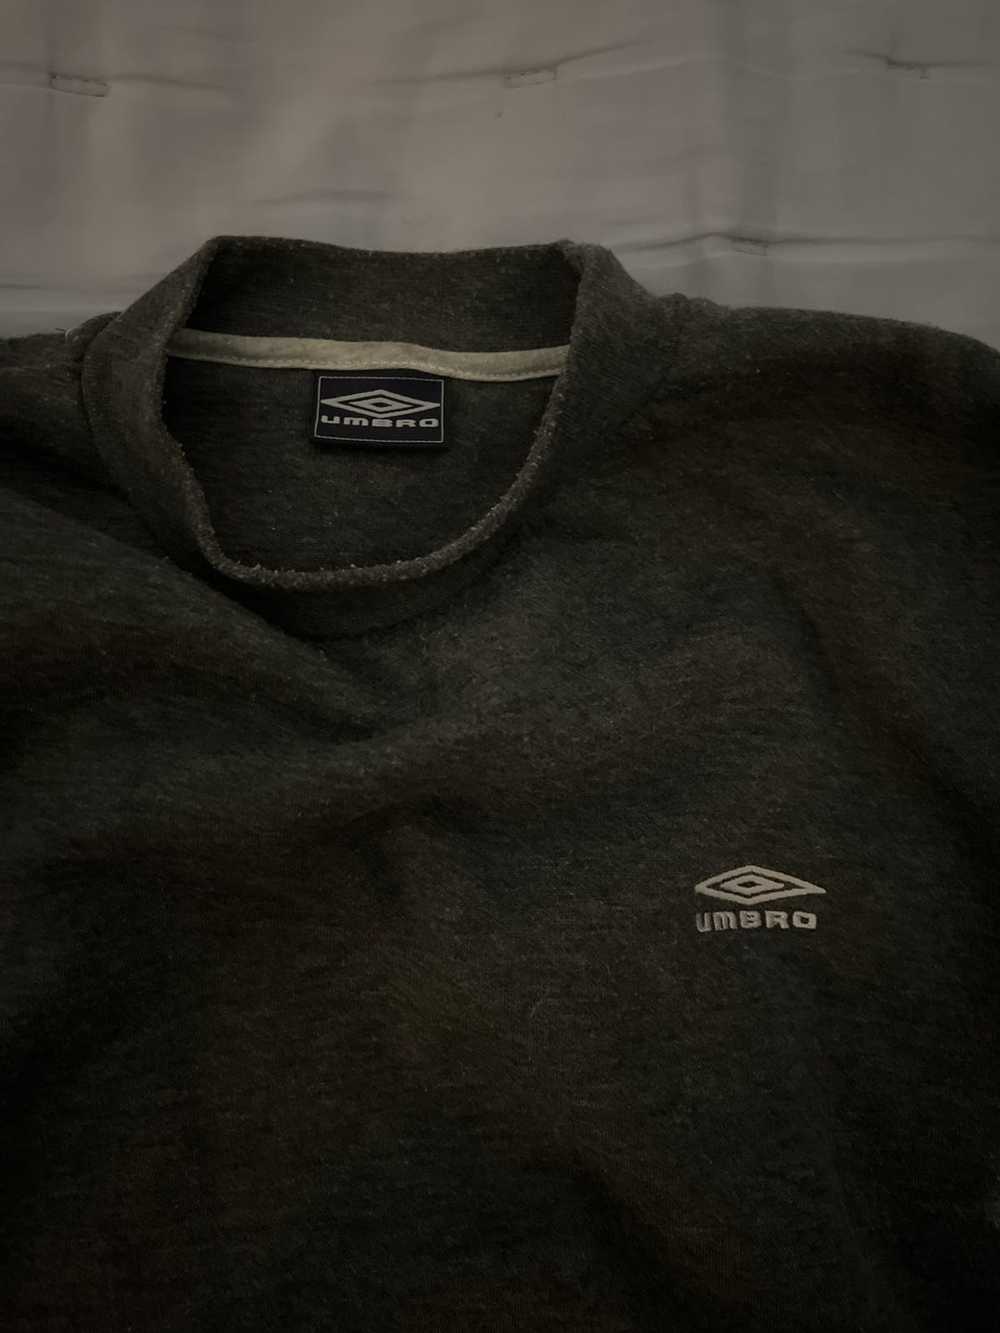 Umbro Vintage Umbria sweatshirt - image 2